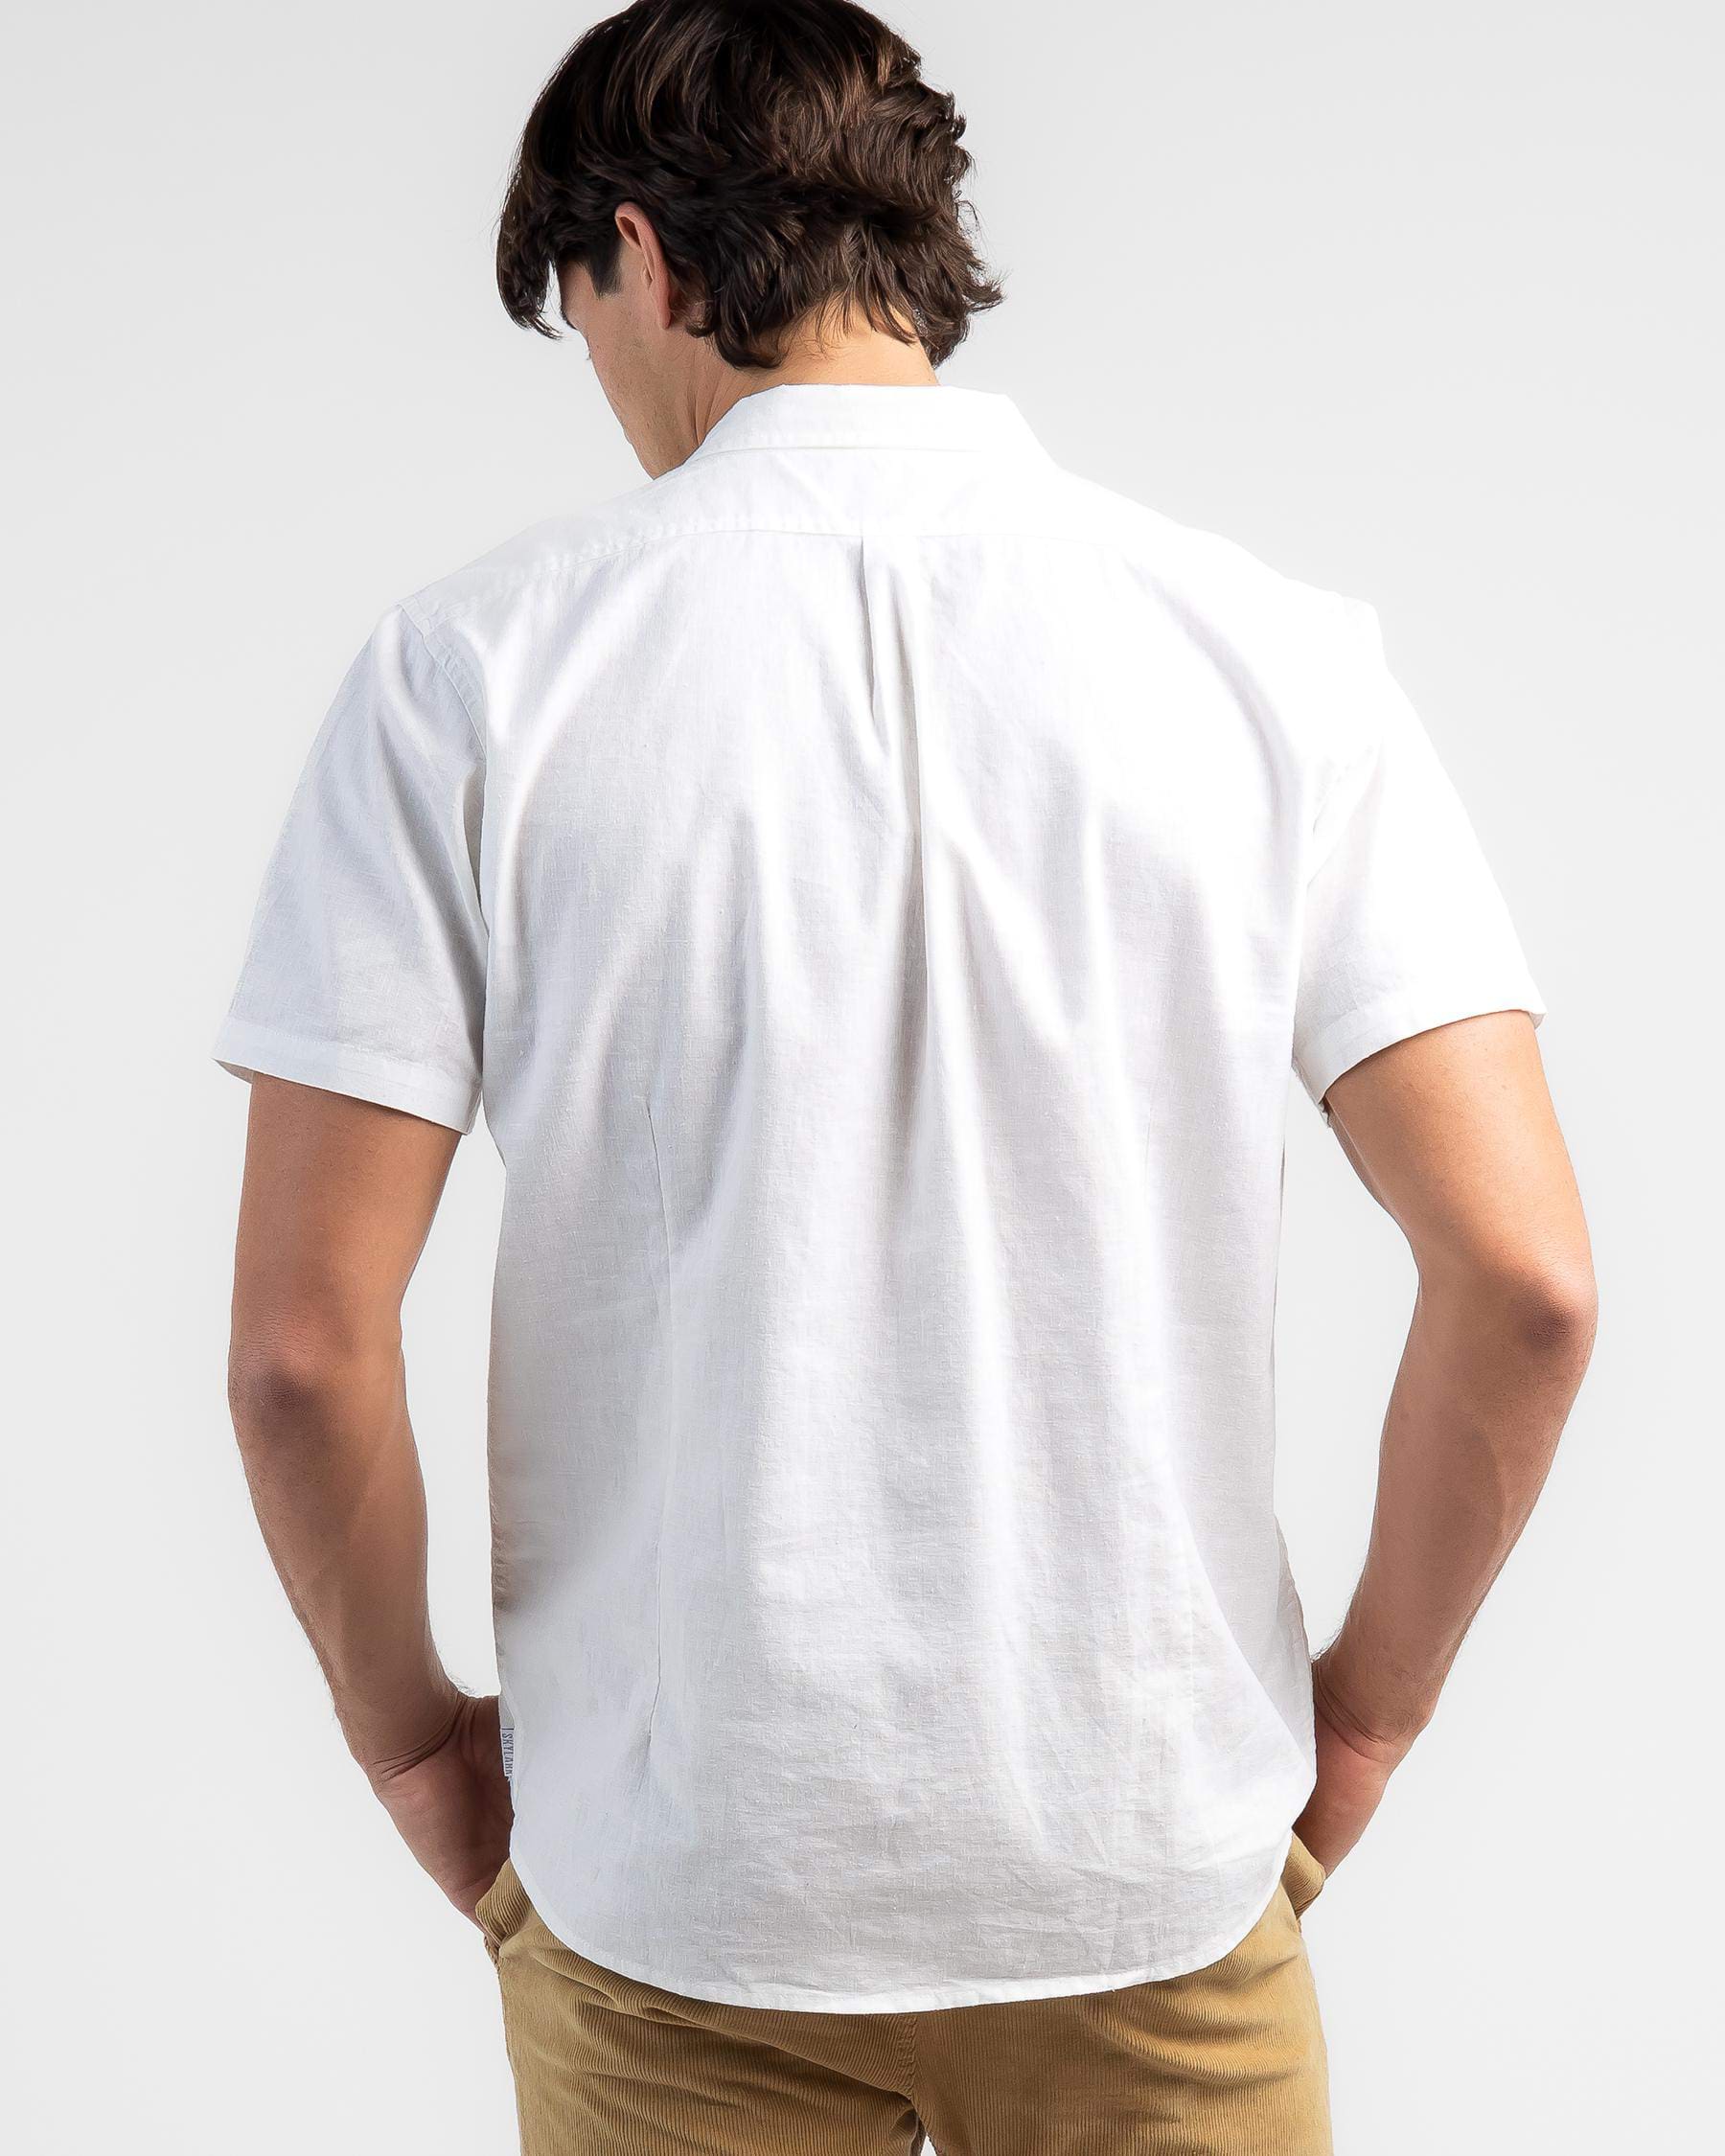 Skylark Hemp Short Sleeve Shirt In White - Fast Shipping & Easy Returns ...